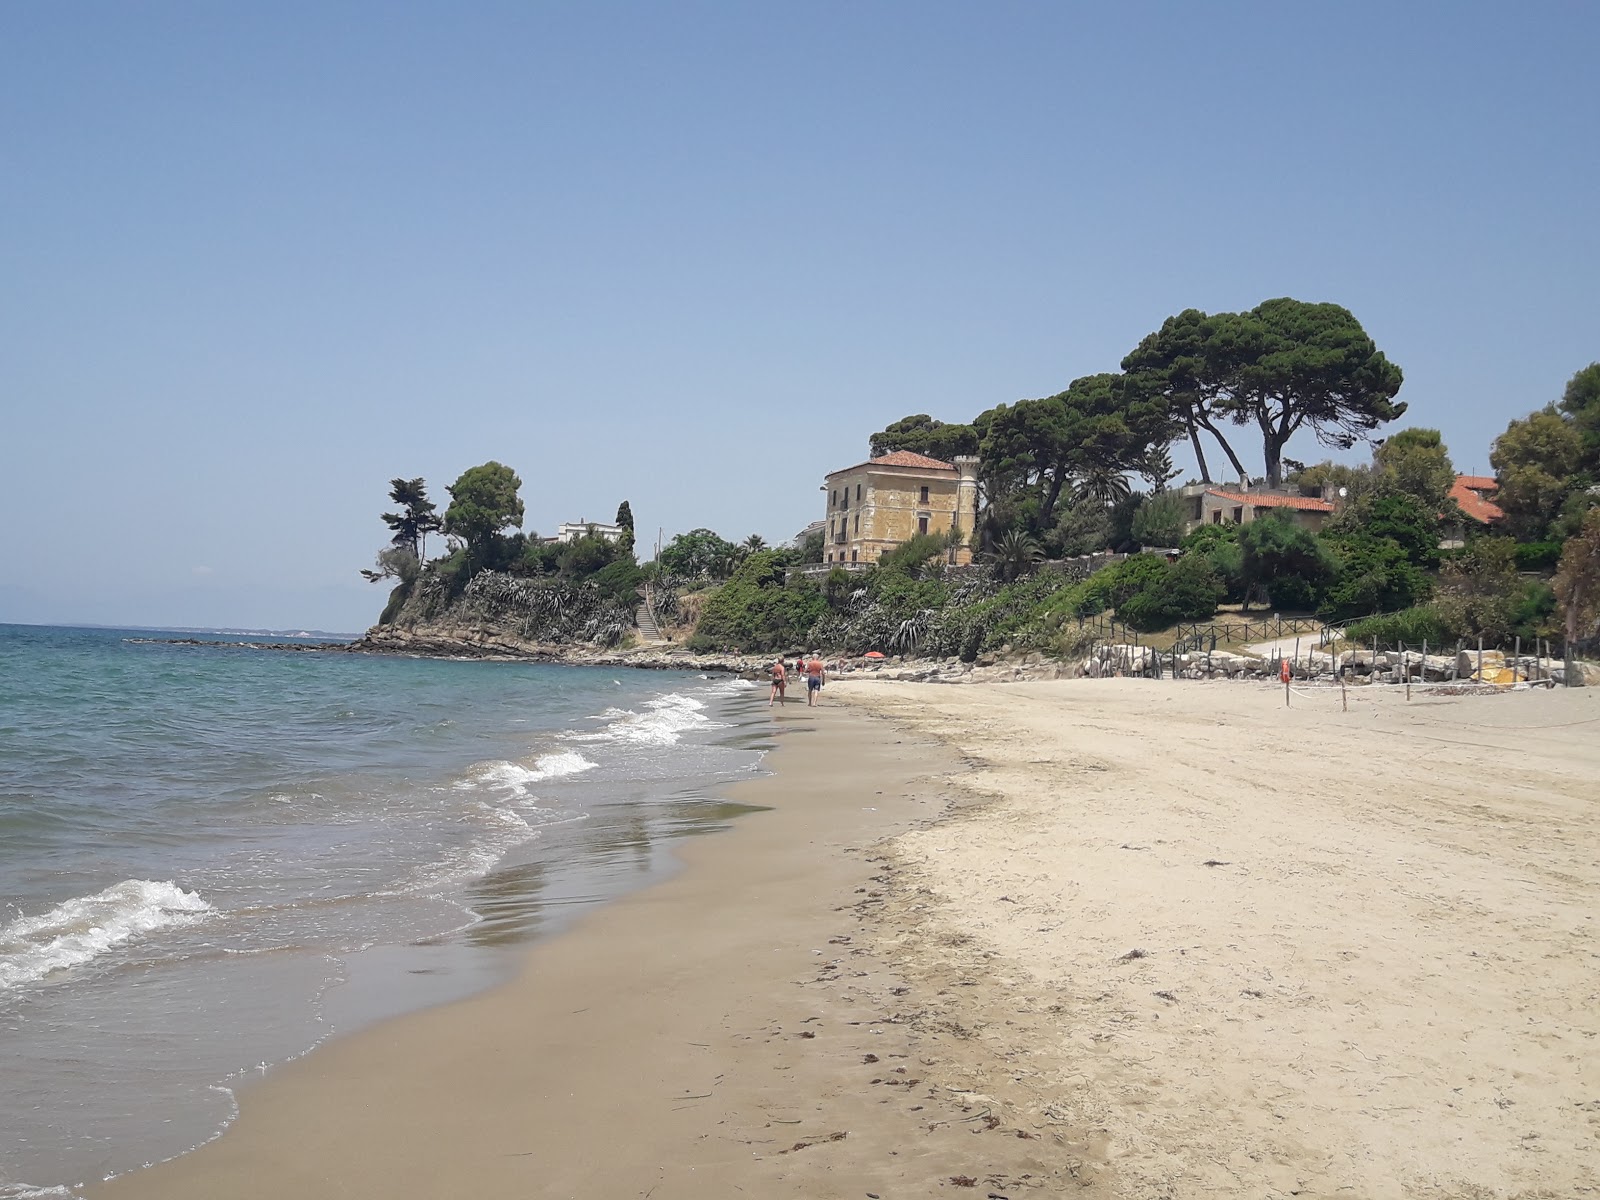 Fotografie cu Plajele Agropoli cu o suprafață de nisip maro